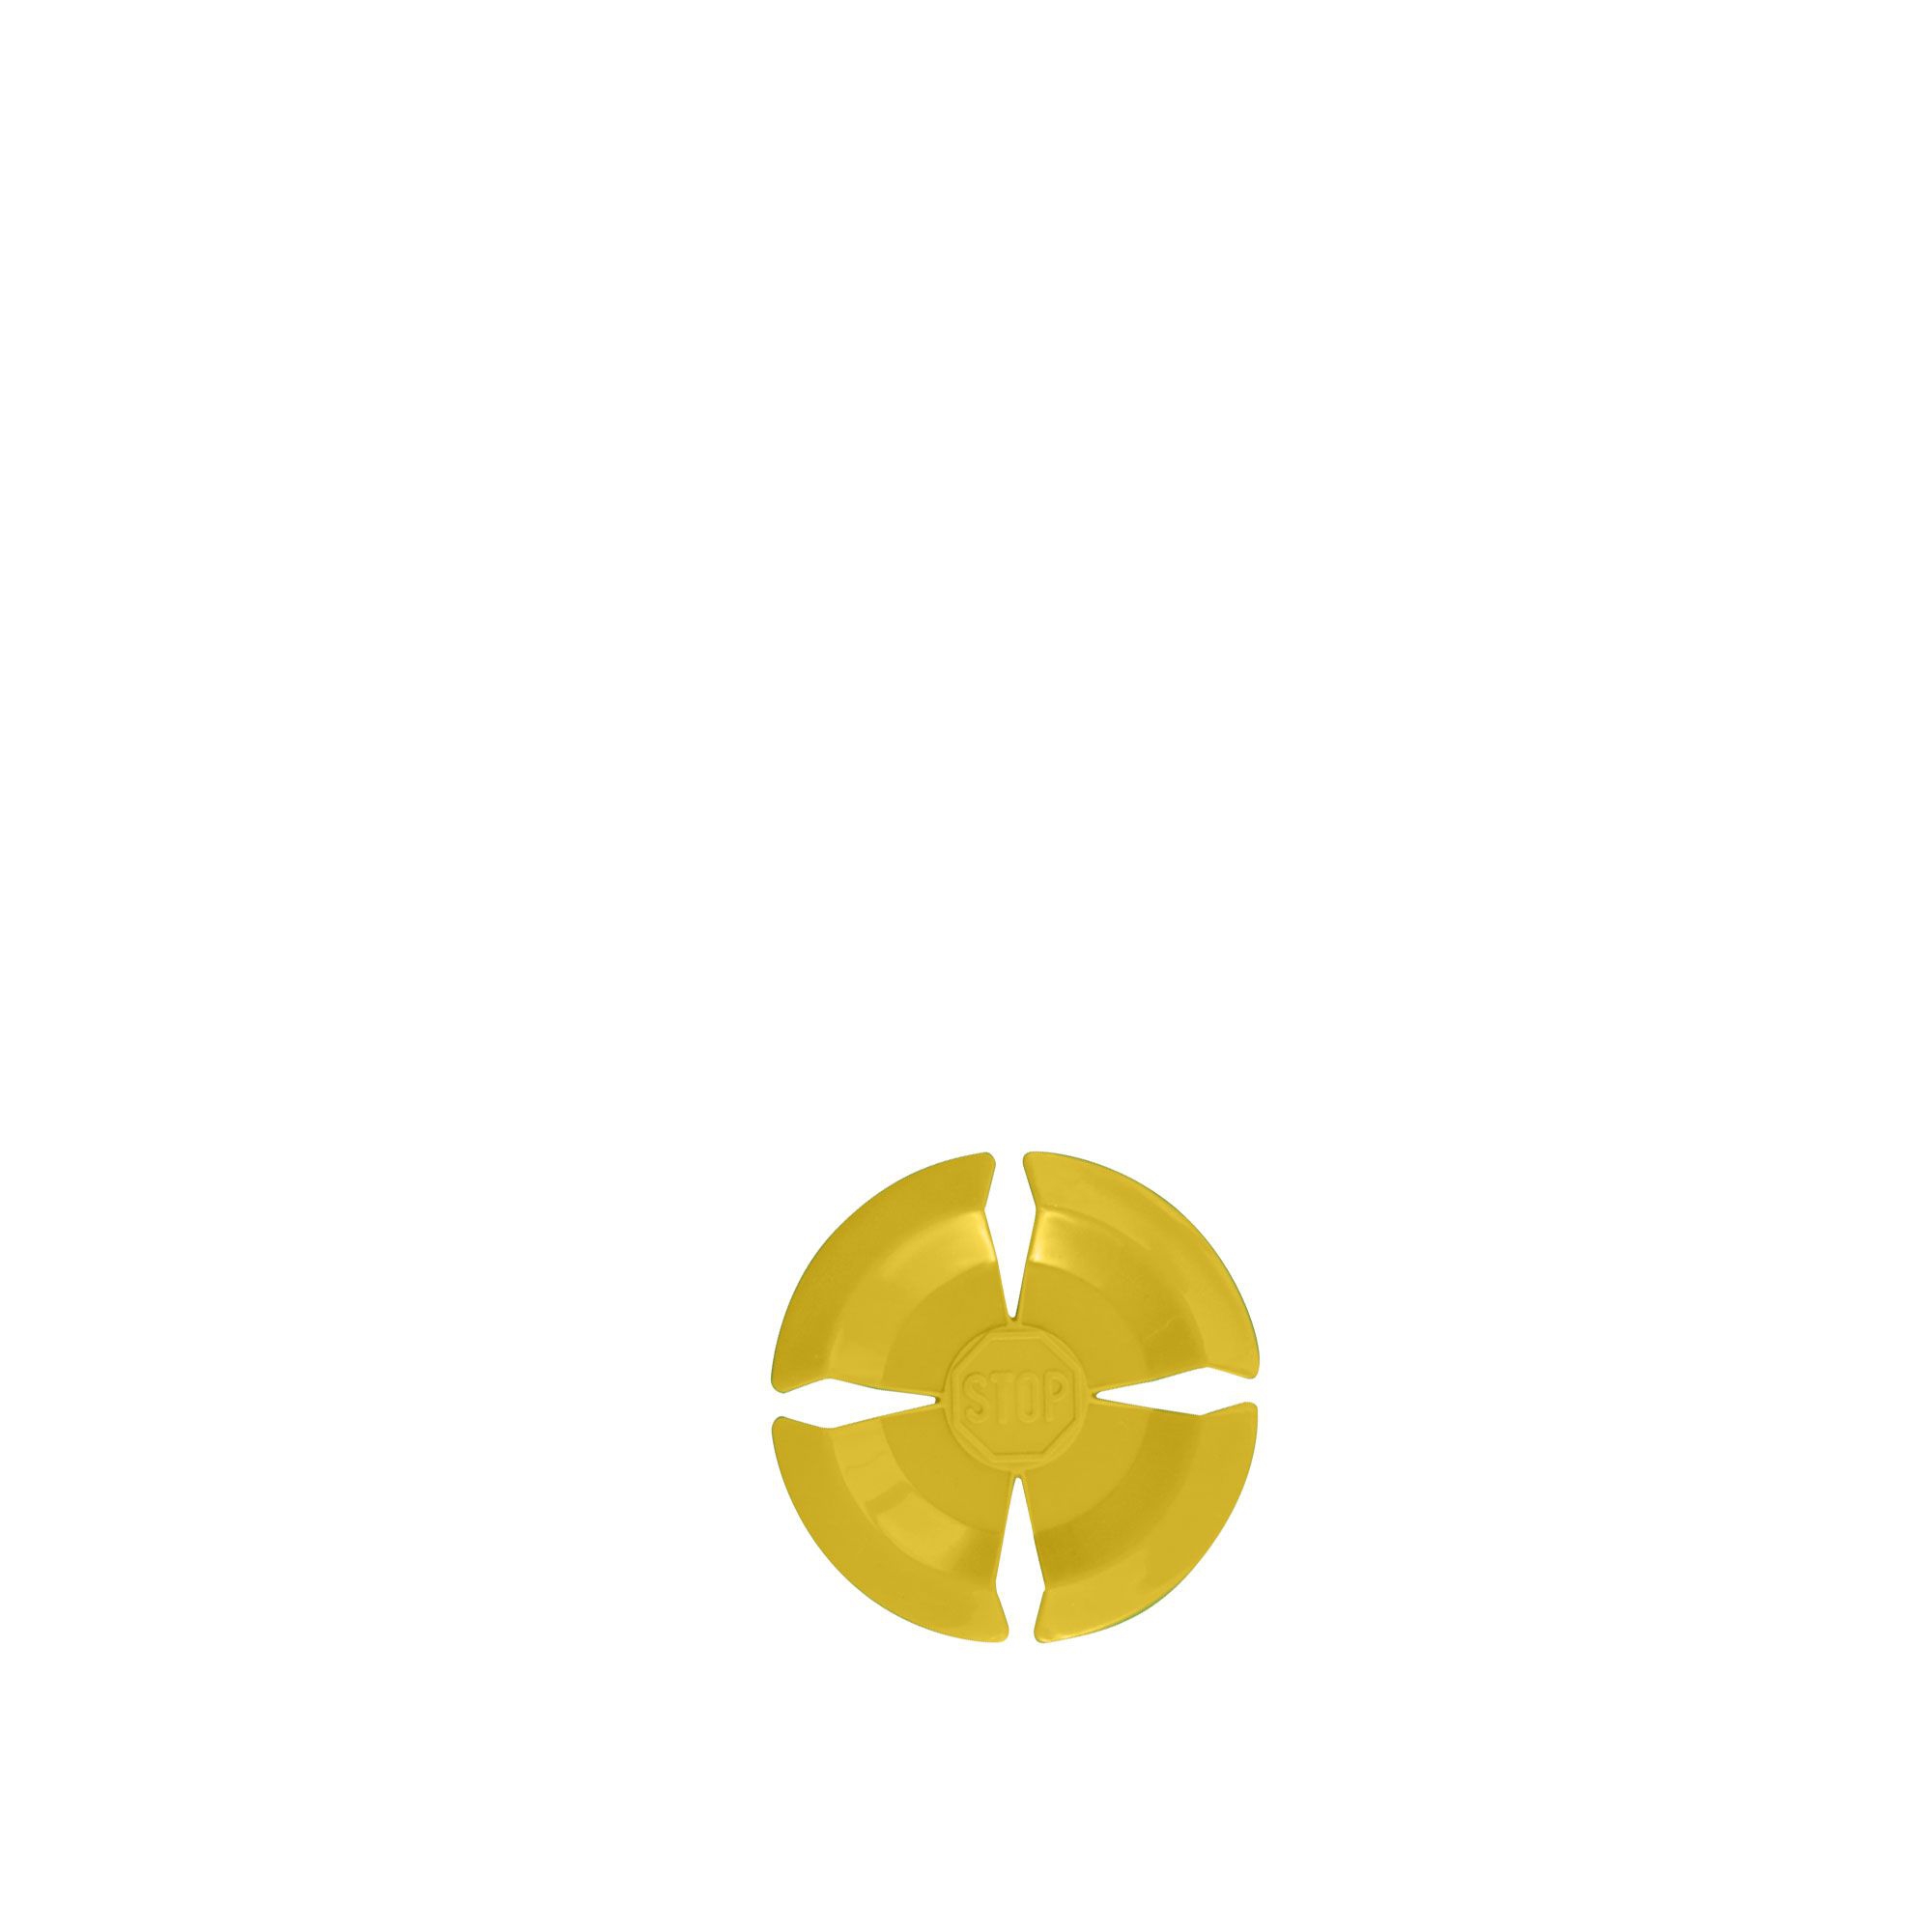 Kochblume - alternate blossom for Kochblume XS yellow